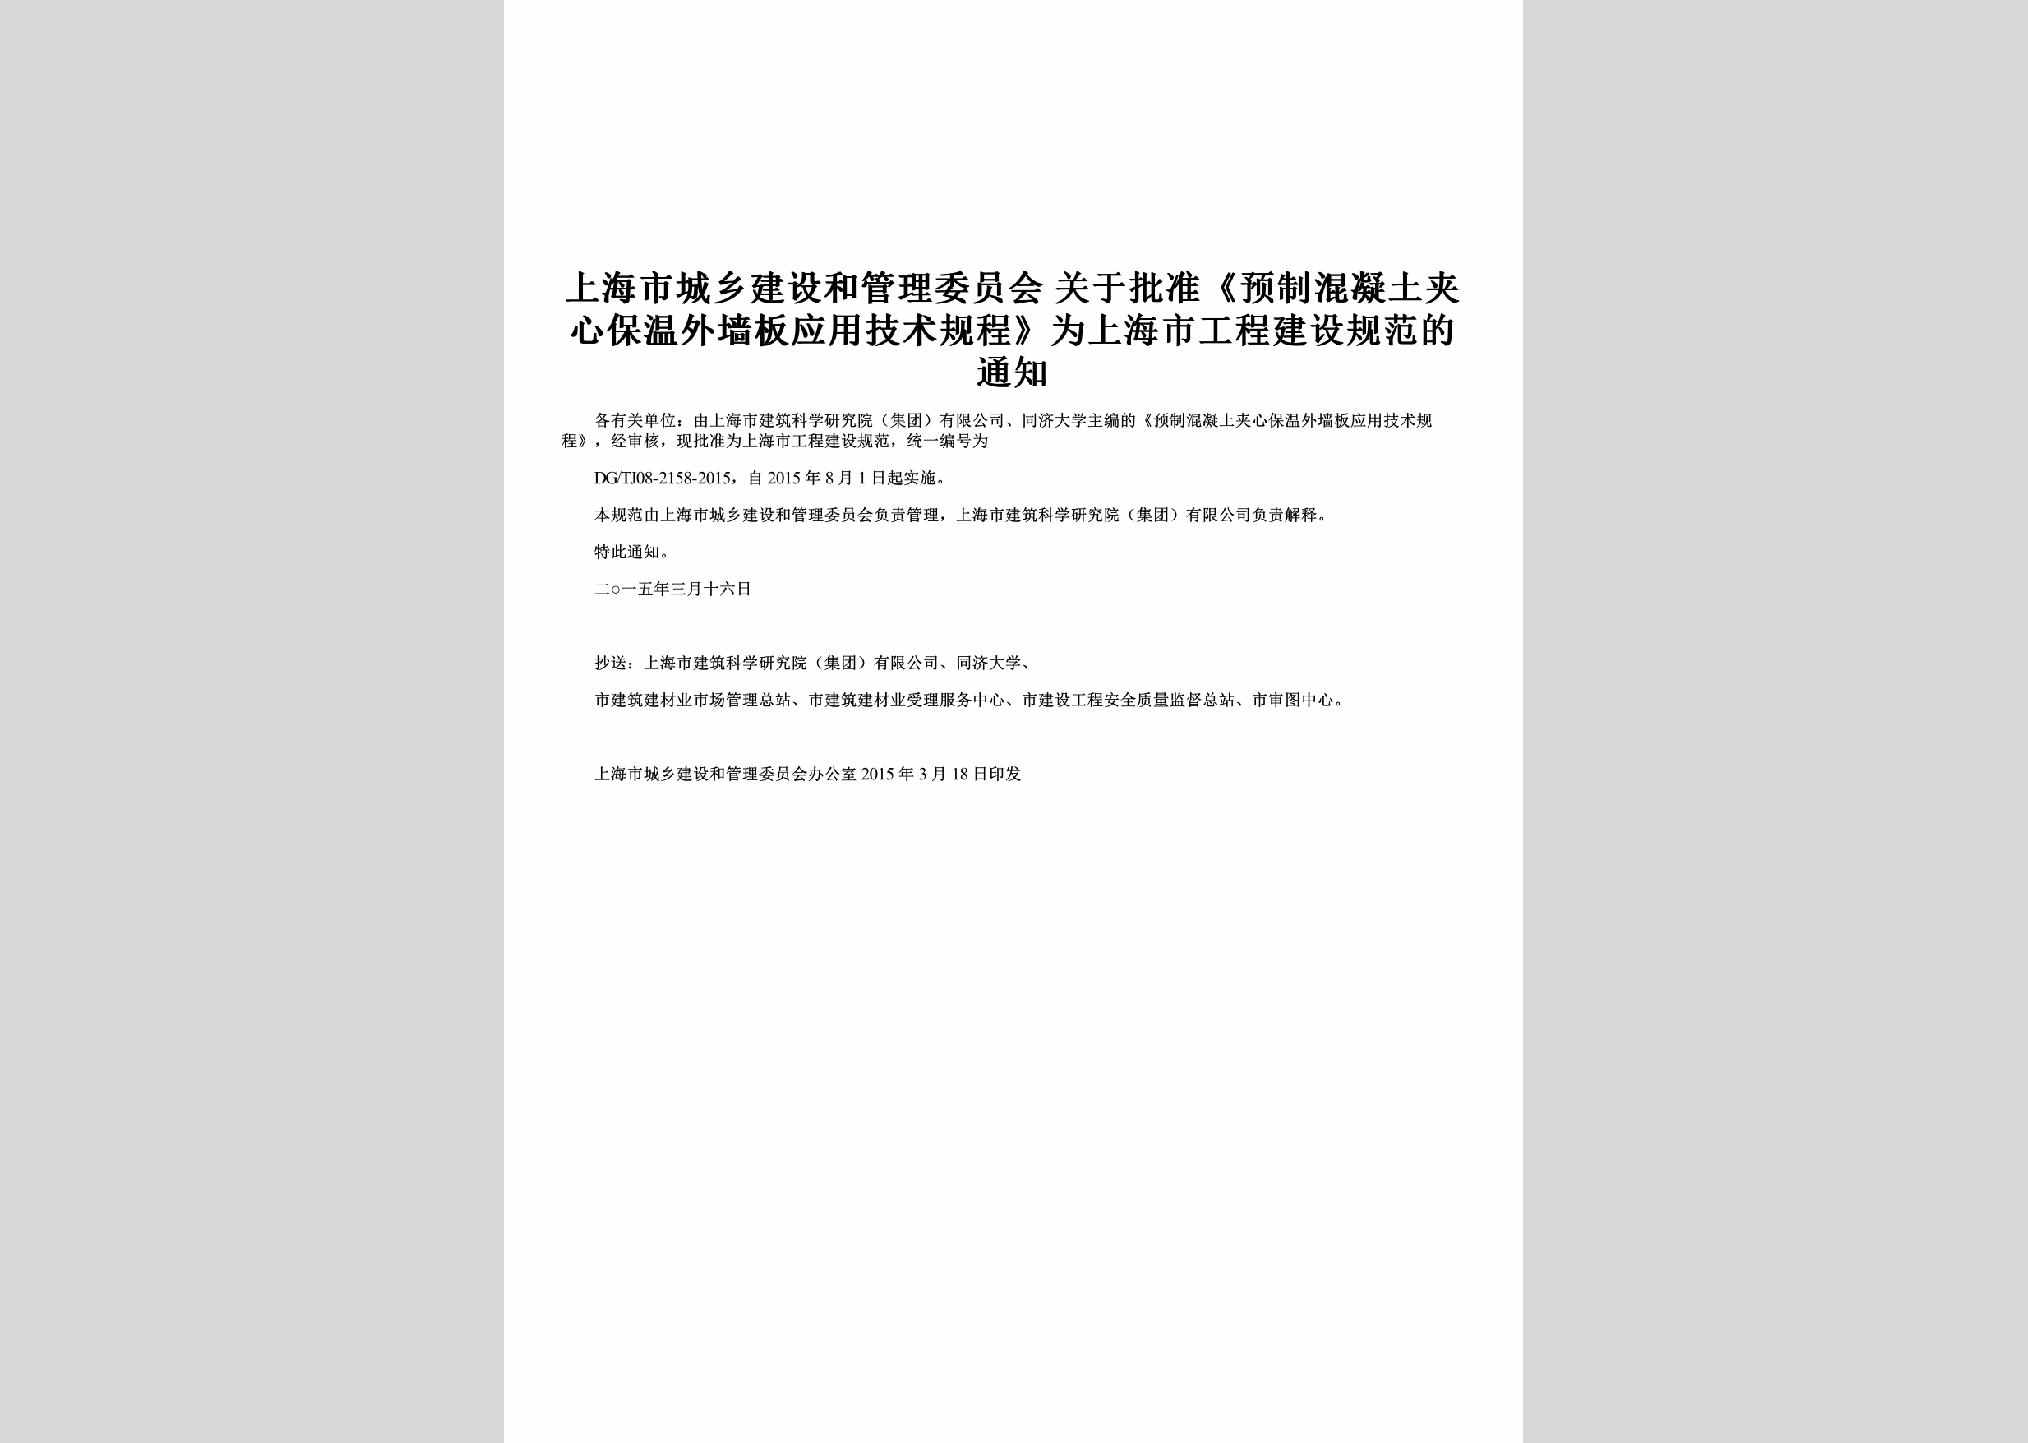 SH-WQBYYTZ-2015：关于批准《预制混凝土夹心保温外墙板应用技术规程》为上海市工程建设规范的通知